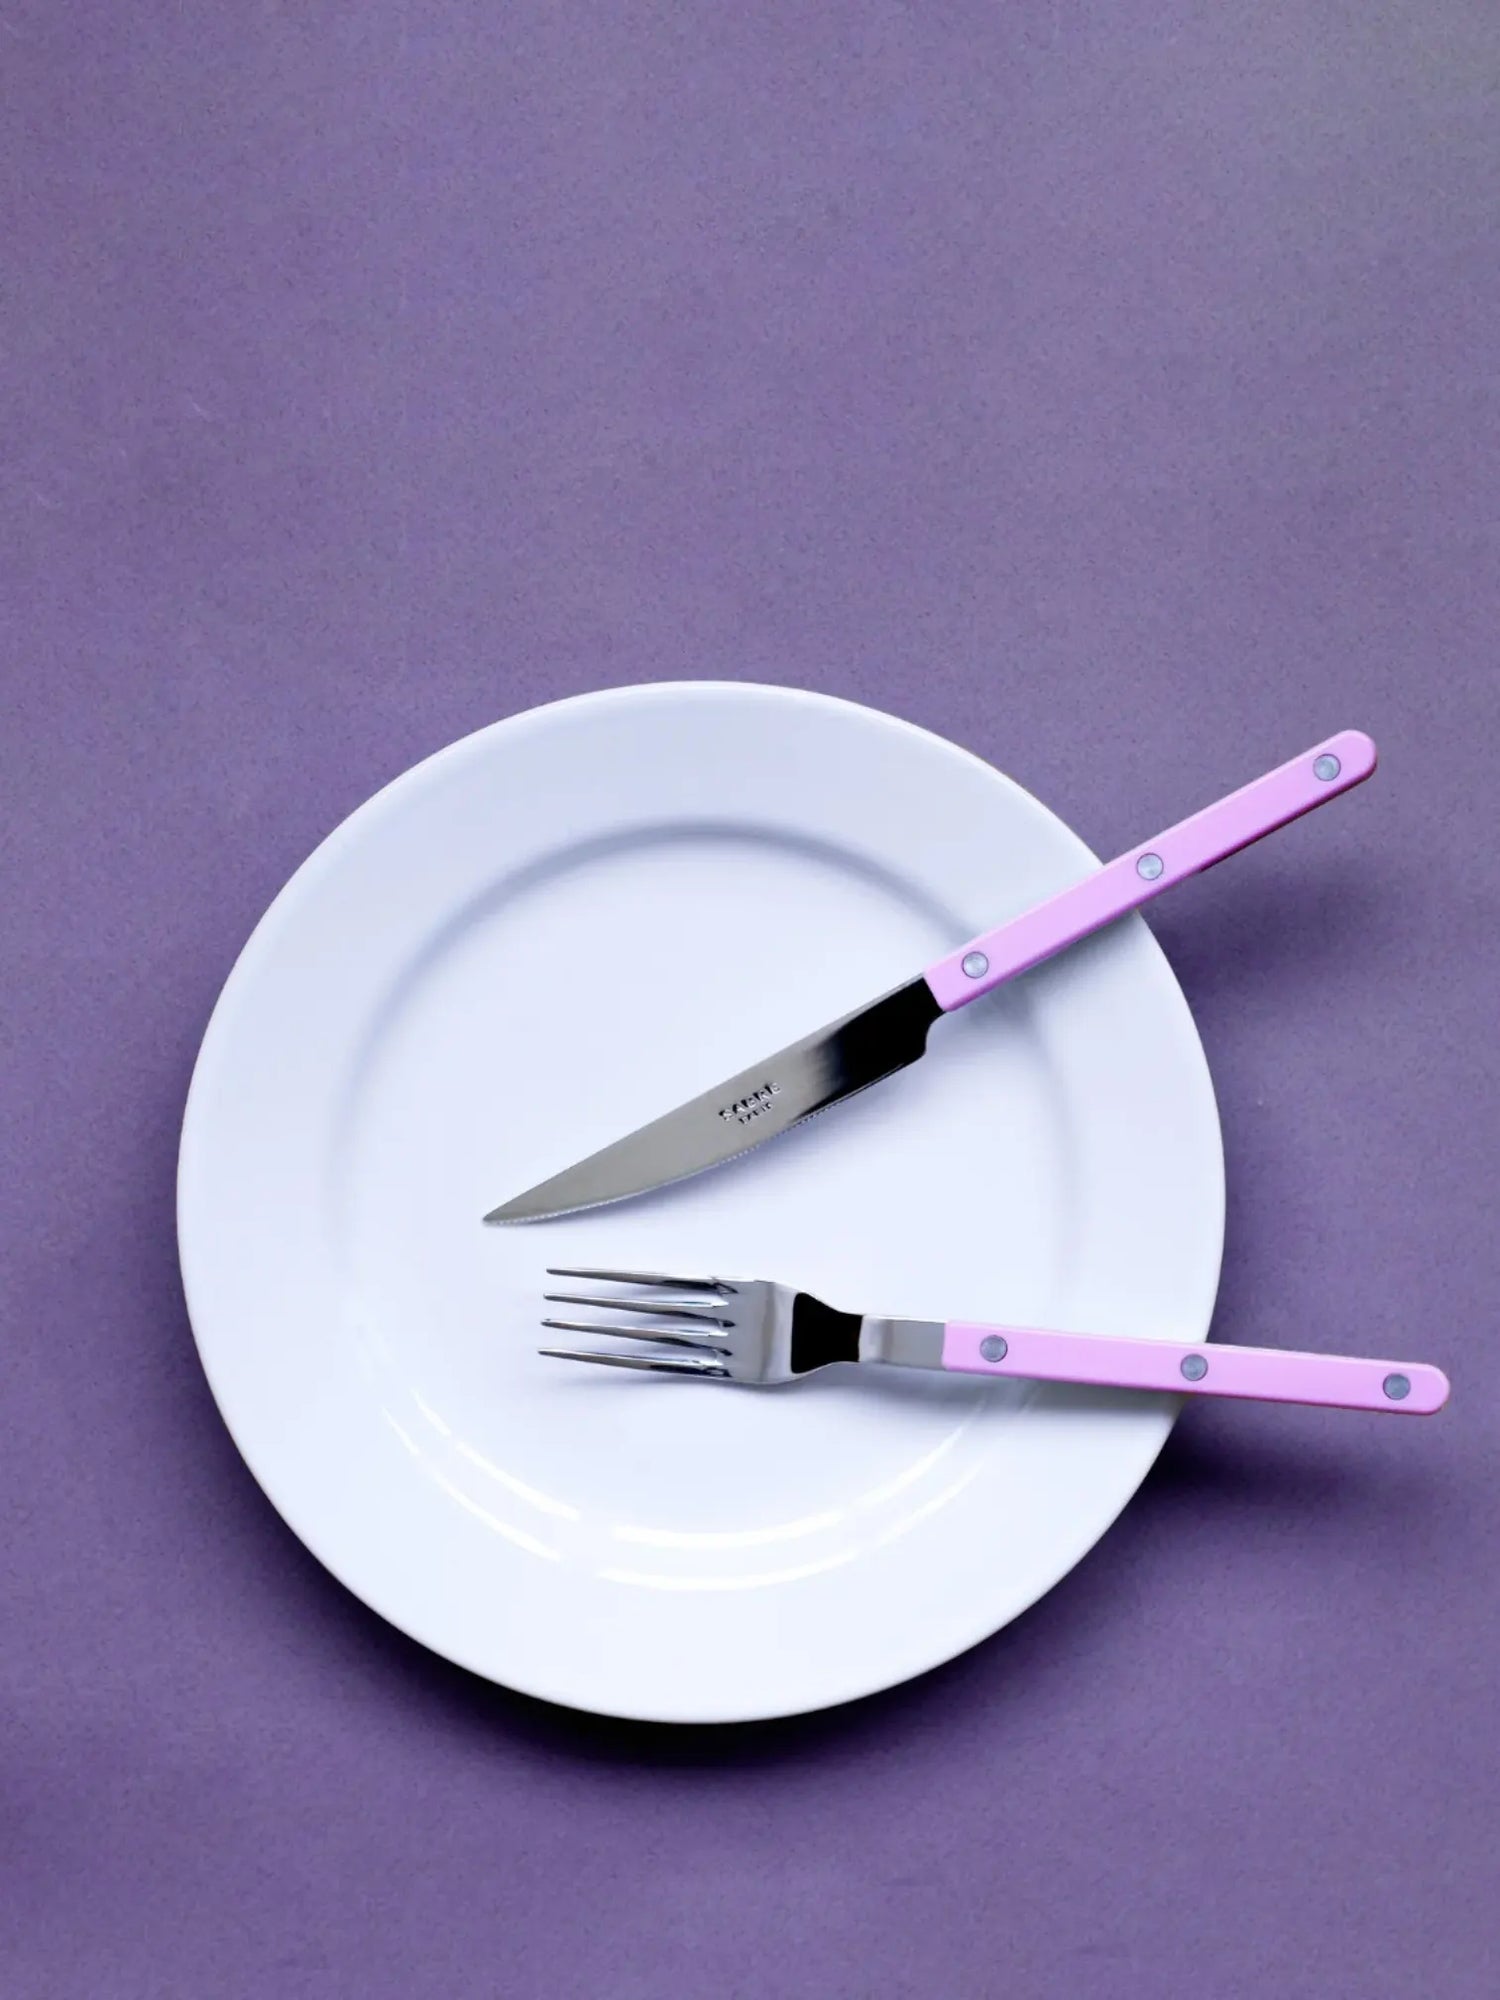 Bistrot dinner fork, solid pink